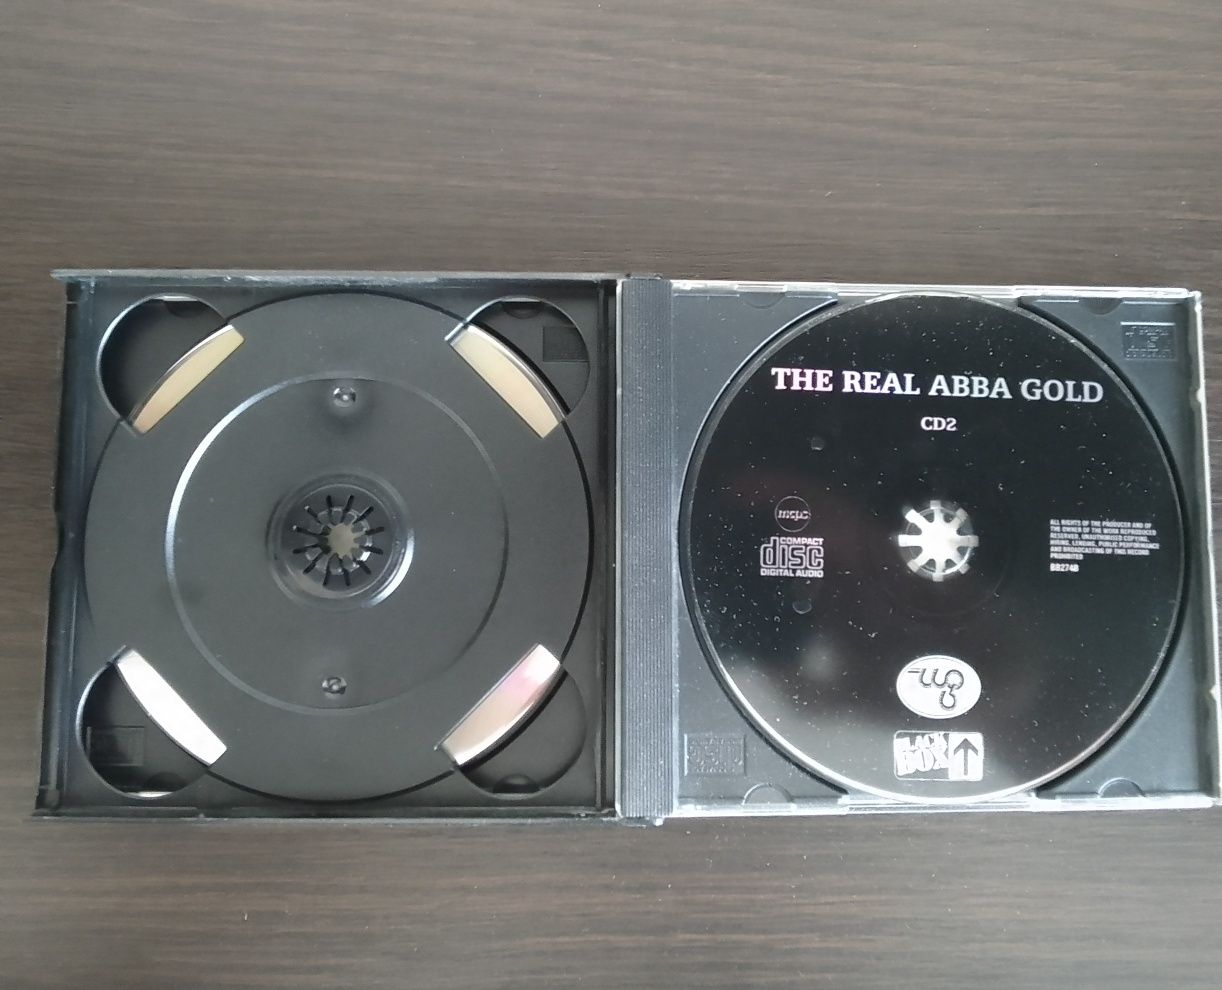 Лицензионные CD:ABBA/Ace of Base/Ateens